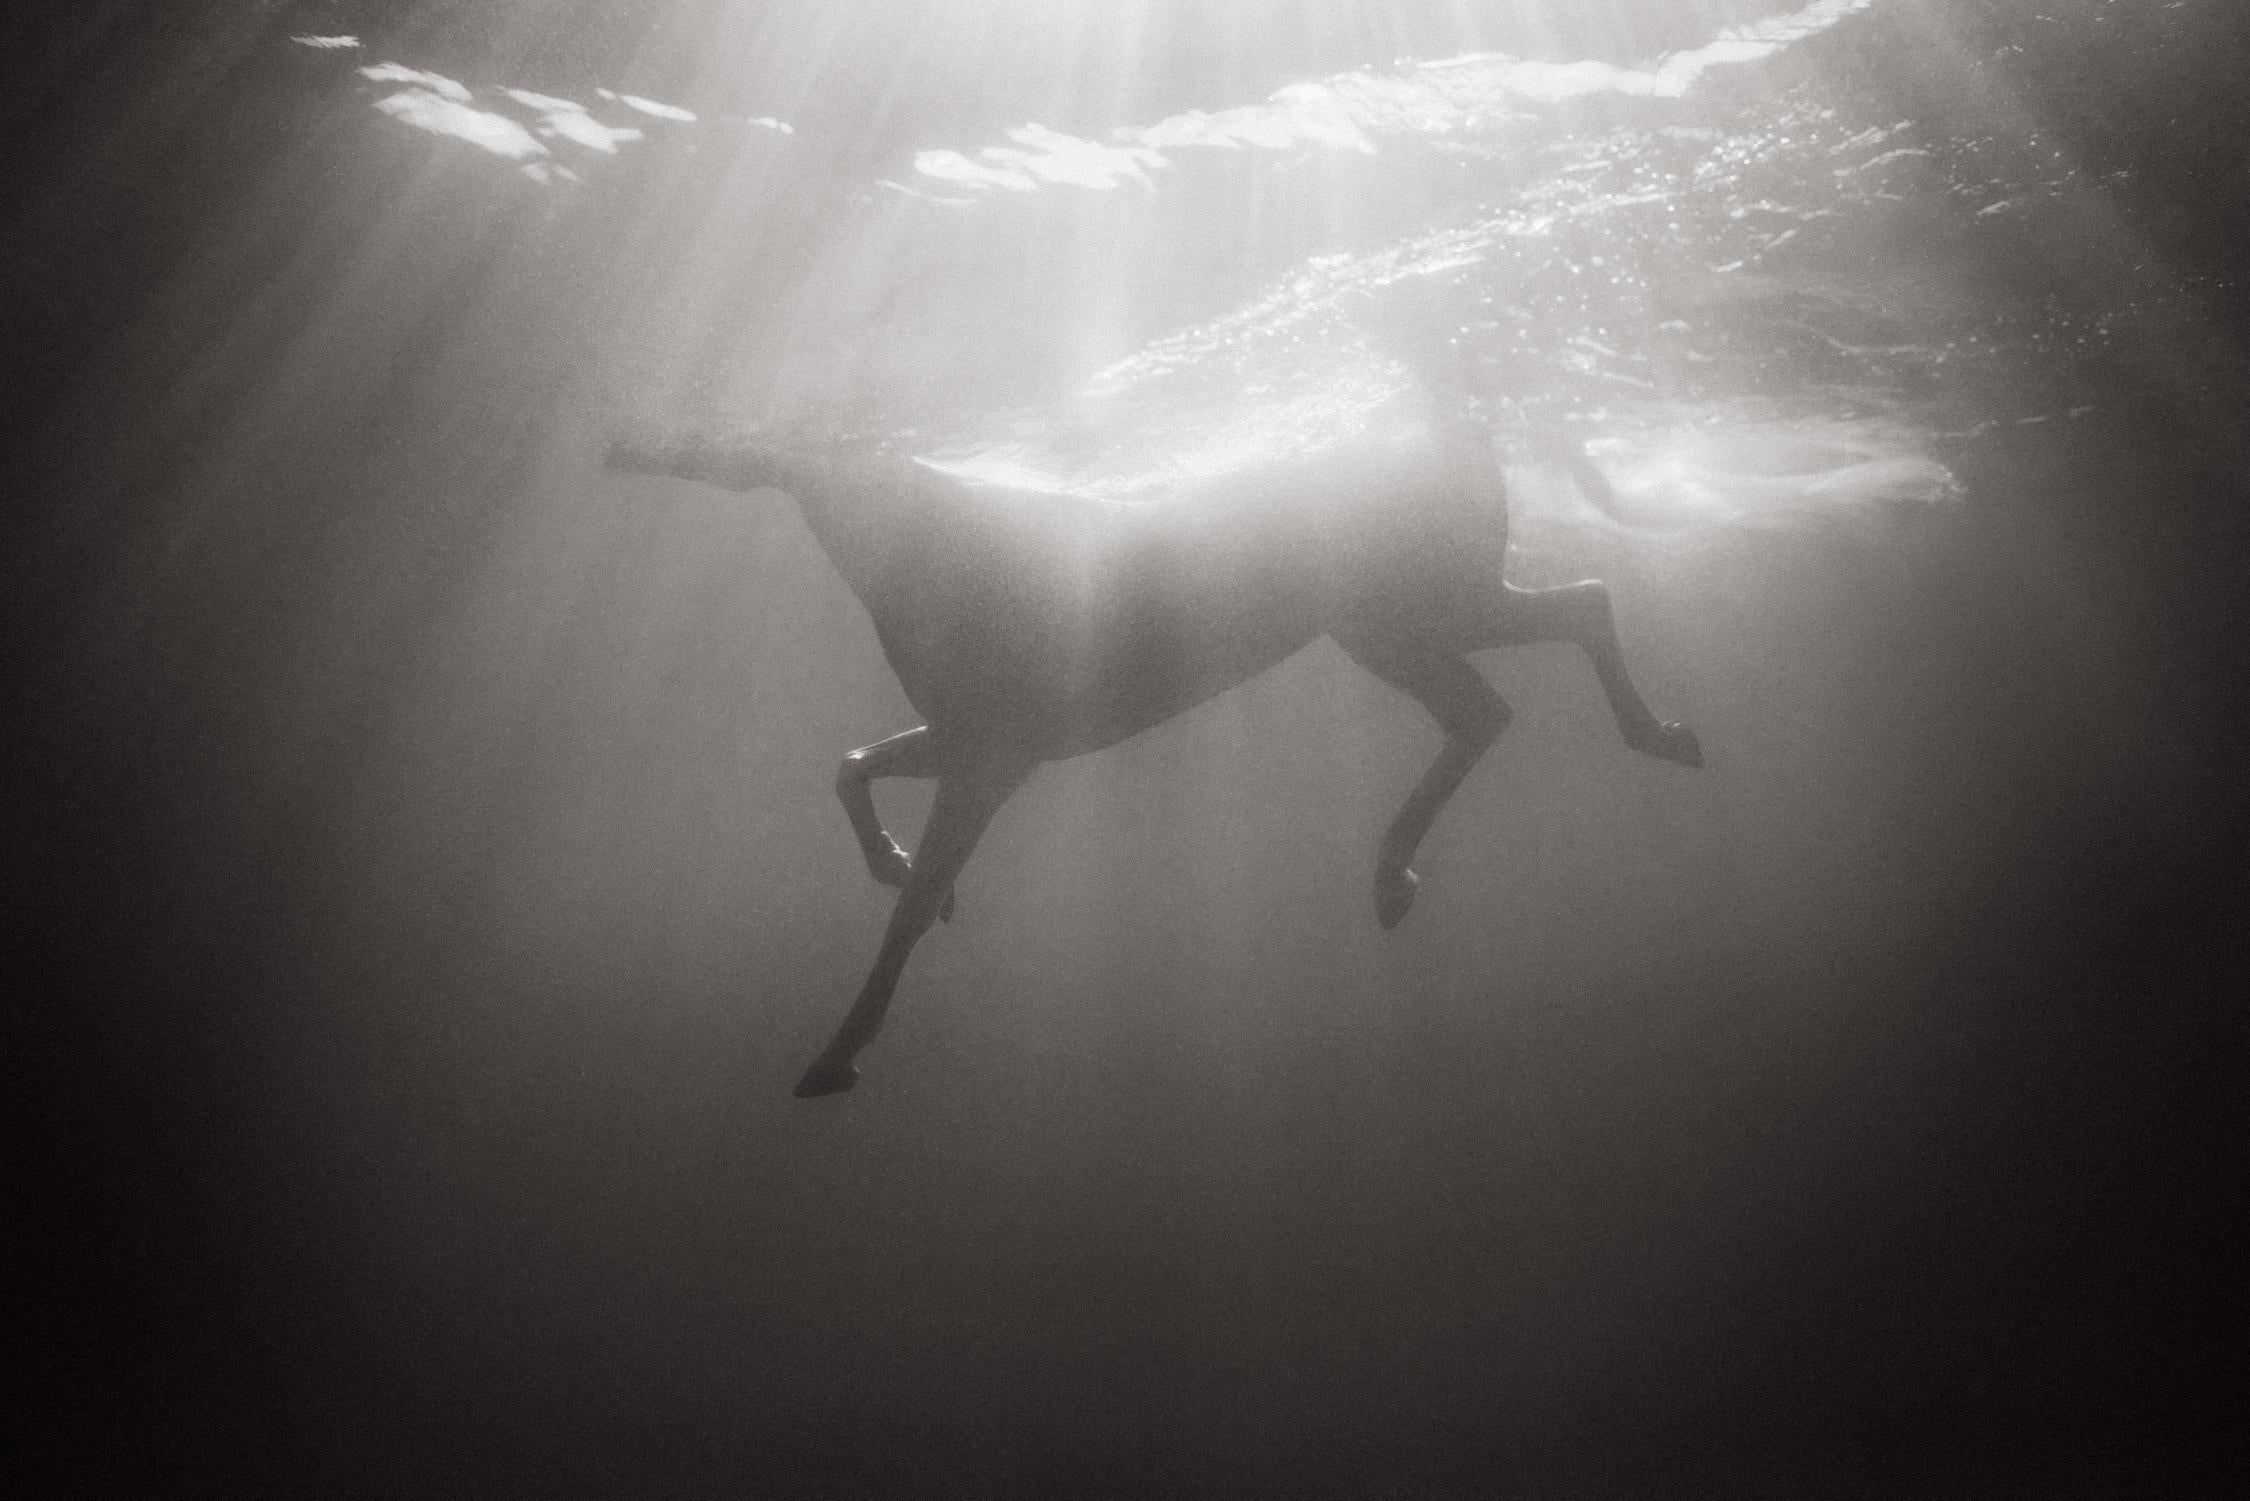 Black and White Photograph Drew Doggett - Cheval tout blanc nageant sous l'eau avec une lumière surréaliste, autre monde